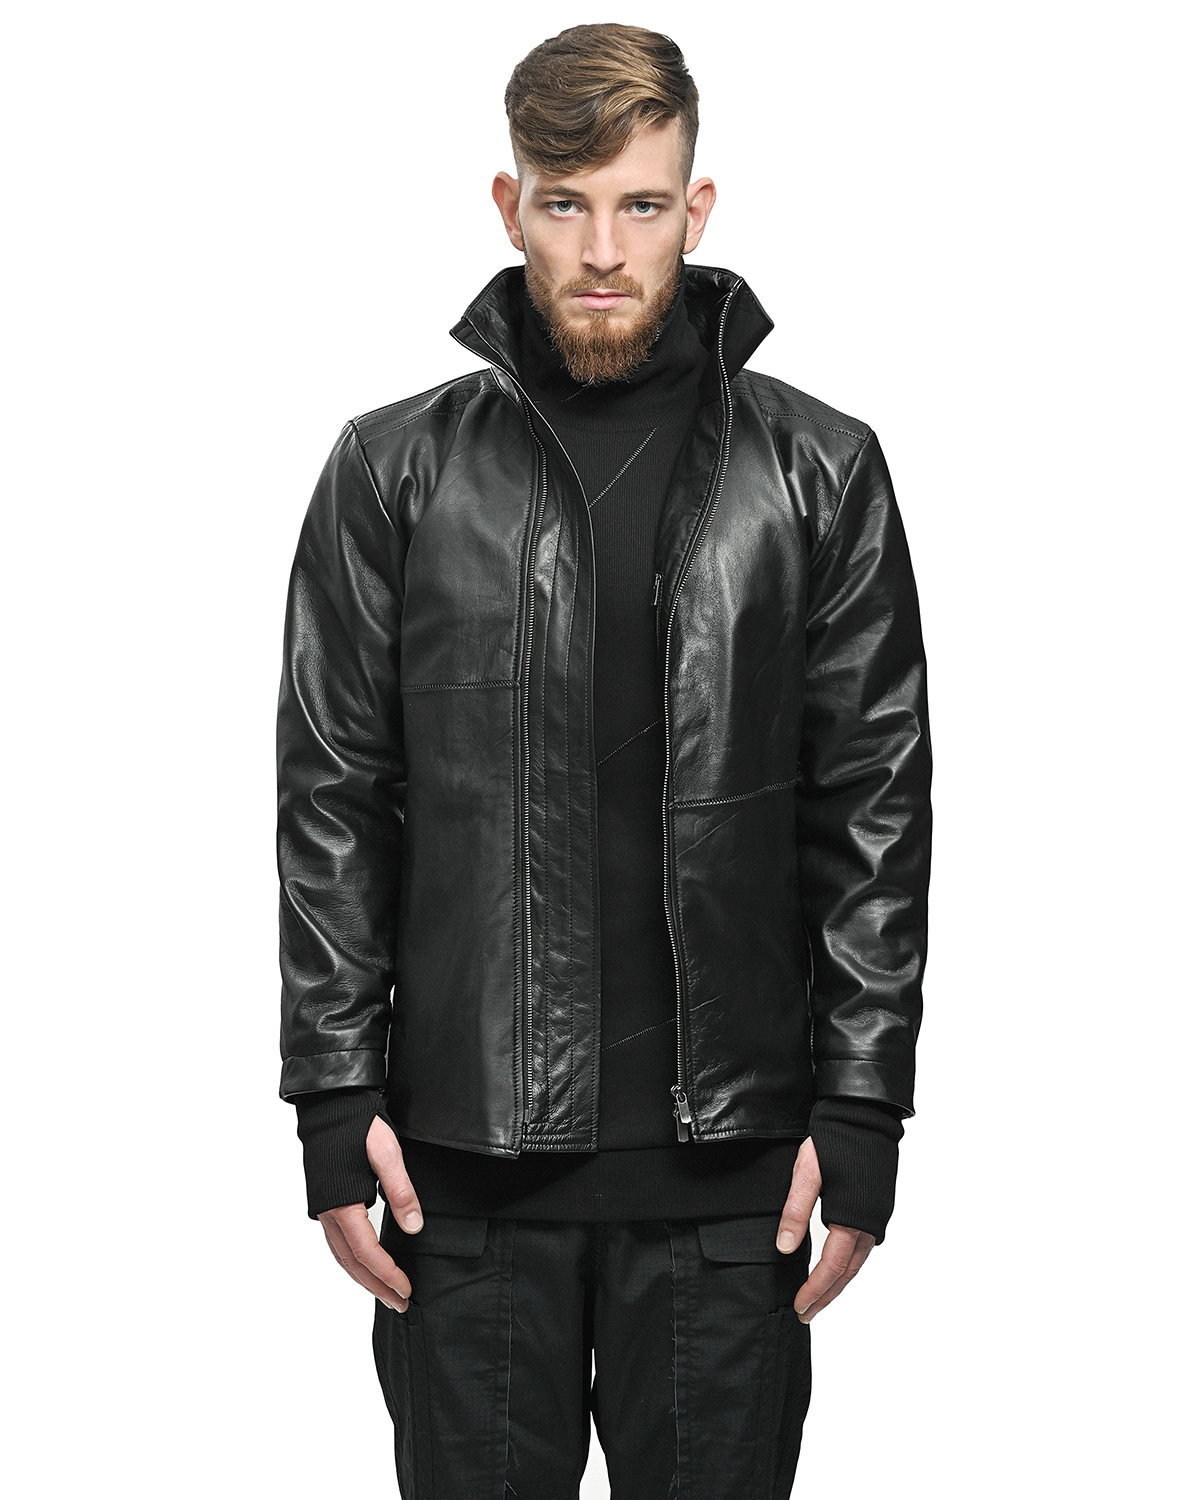 _7, Julius, leather jackets x3, bags, scarf - supermarket | Leather jacket,  Jackets, Single clothing